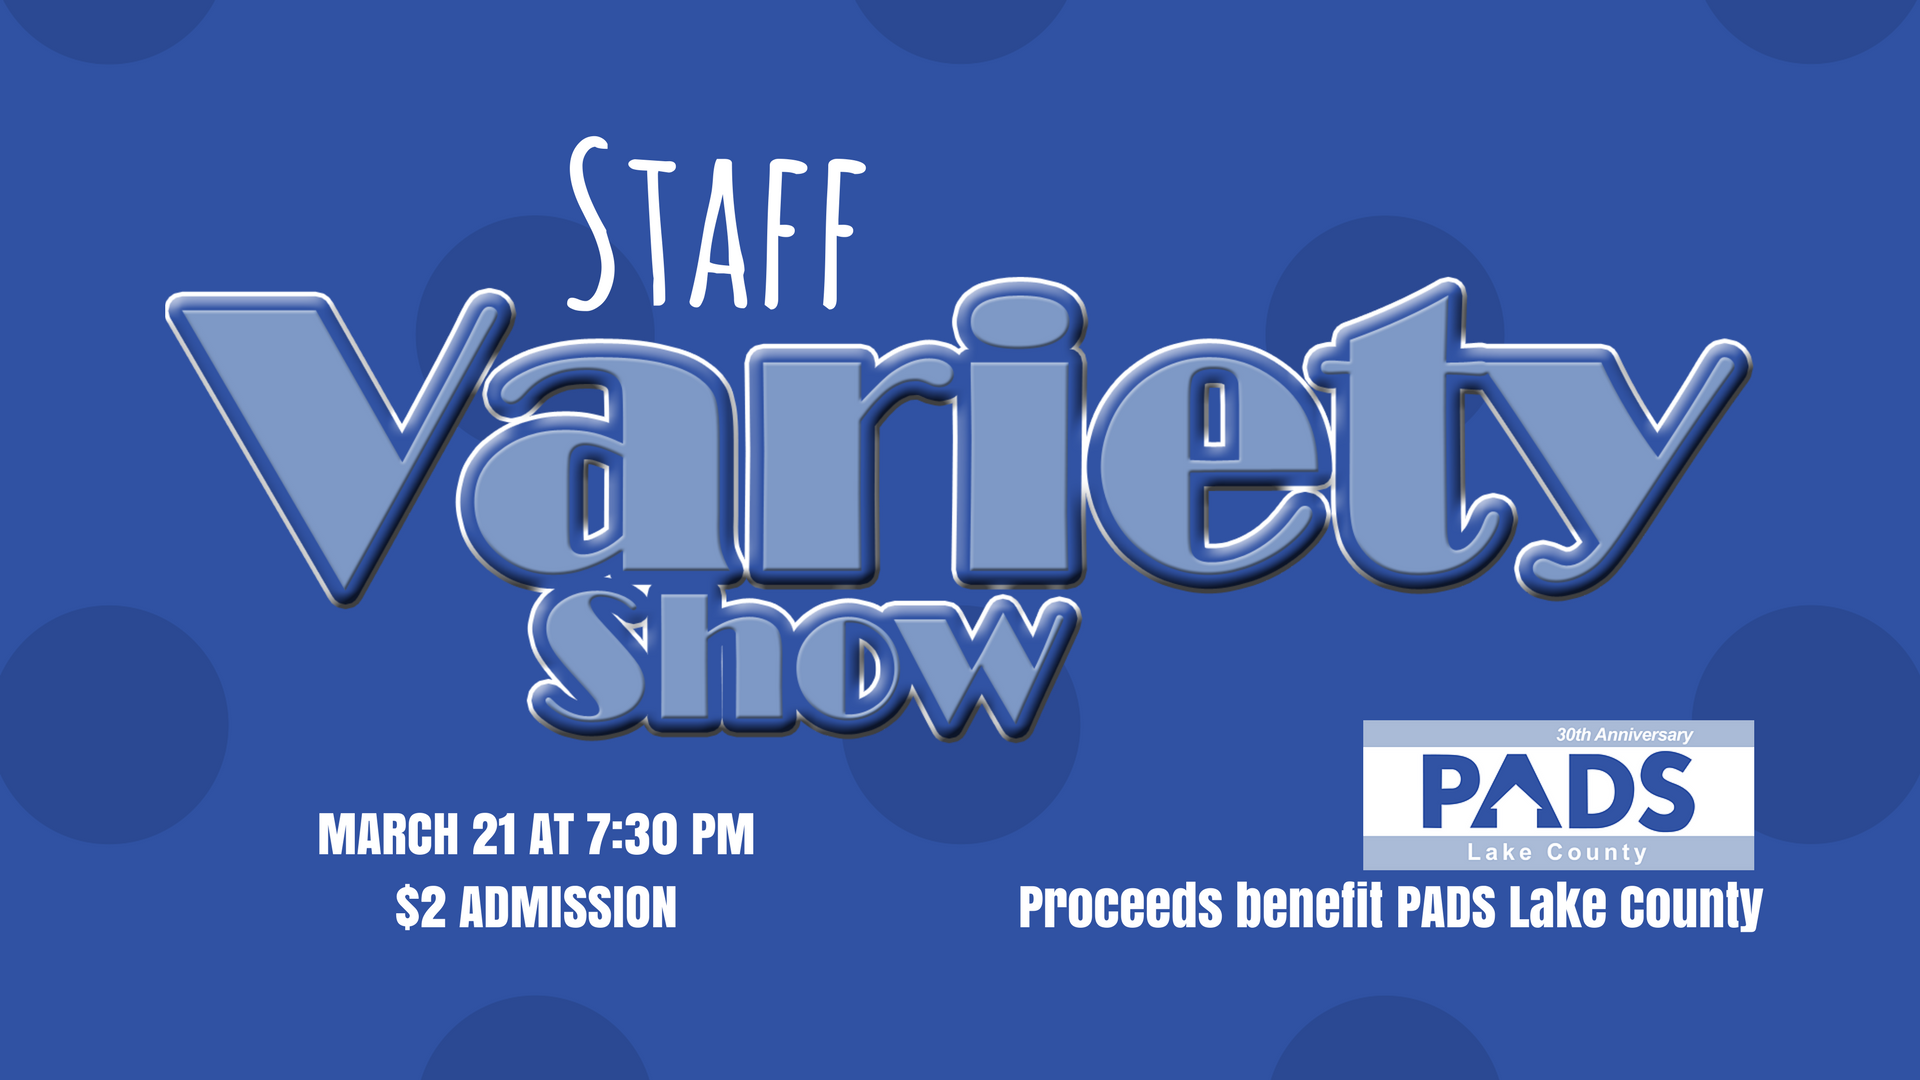 staff variety show 2018